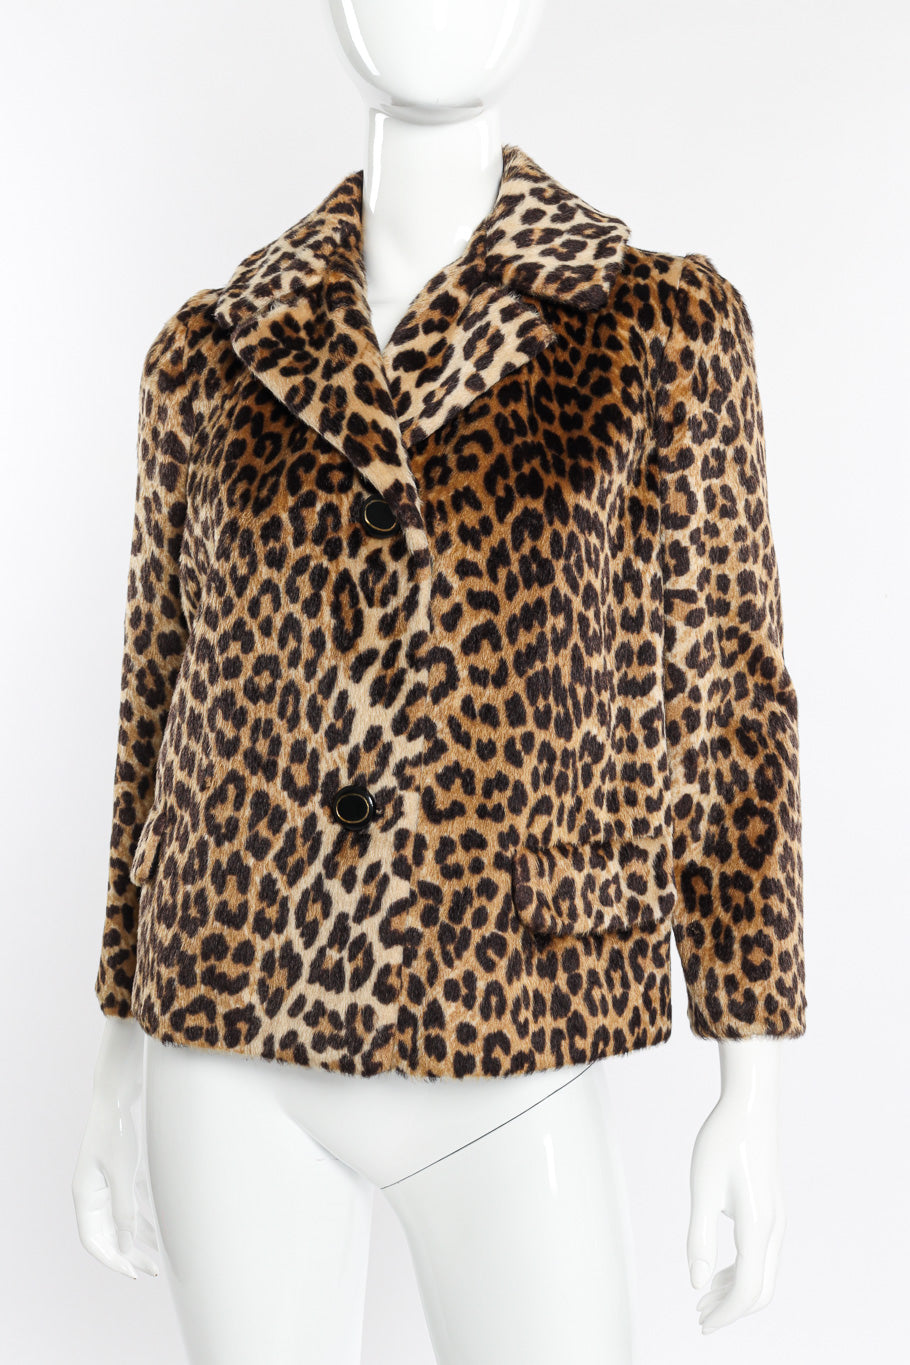 Vintage Marcus Leopard Print Jacket front view on mannequin closeup @recessla